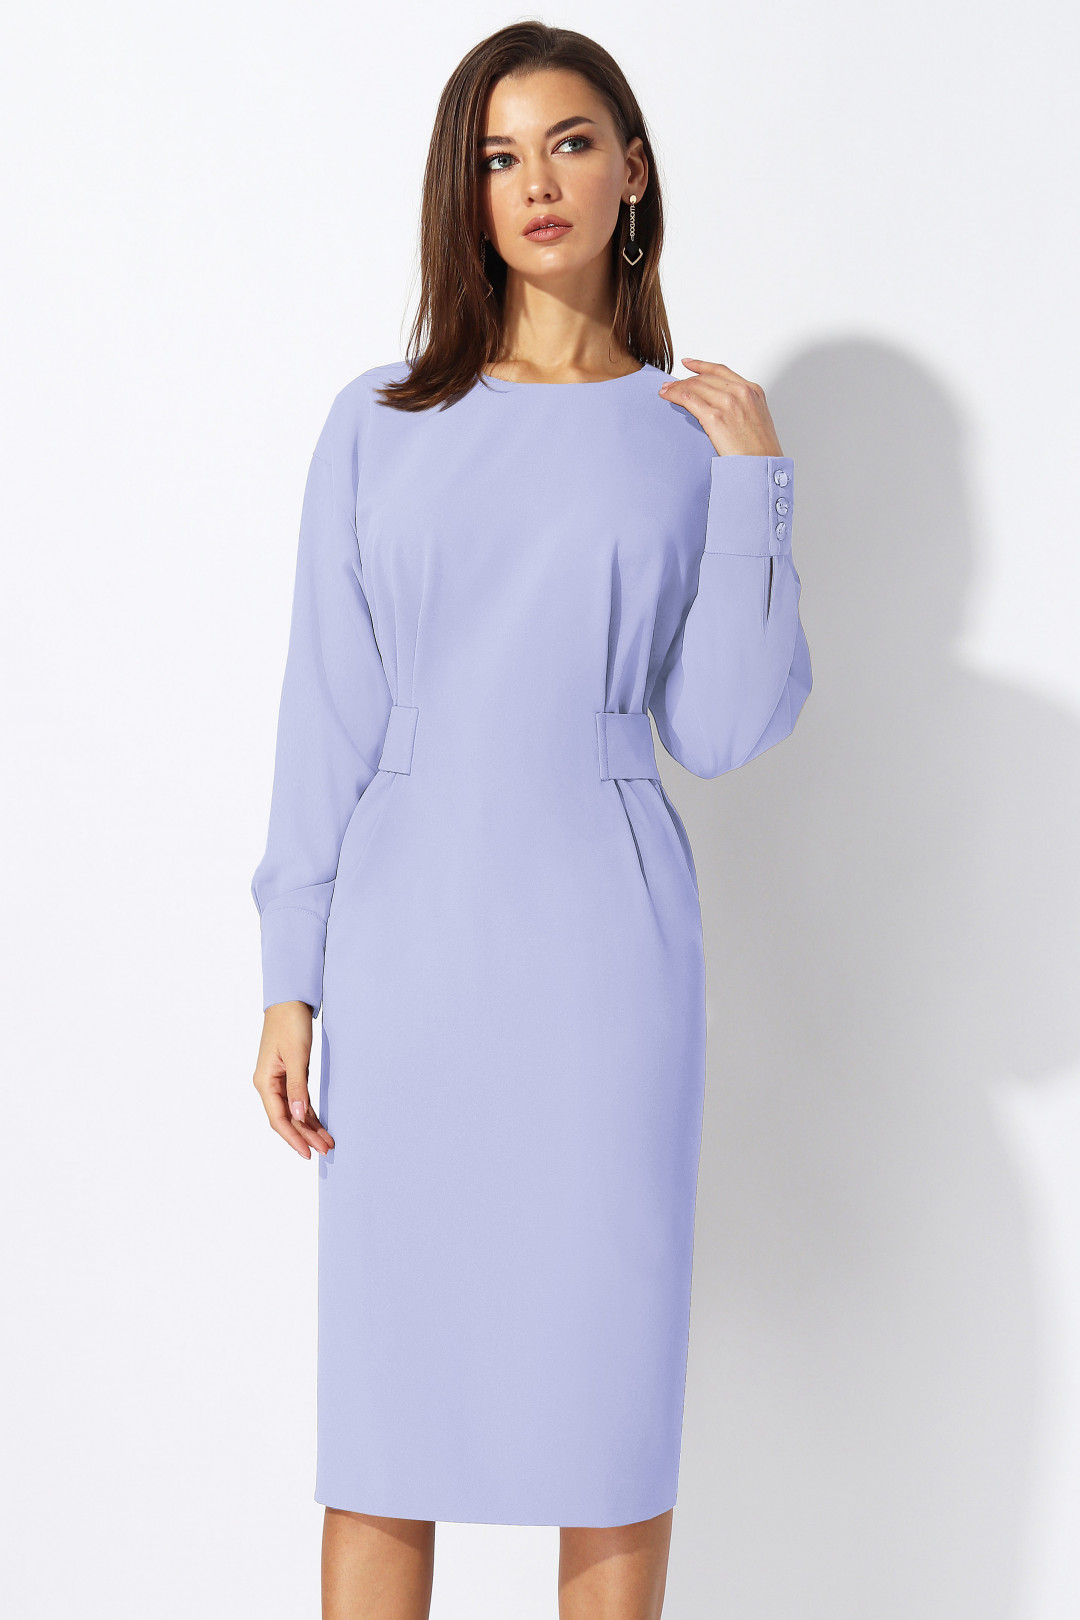 Платье МиА-Мода 1197-4 нежно-голубой